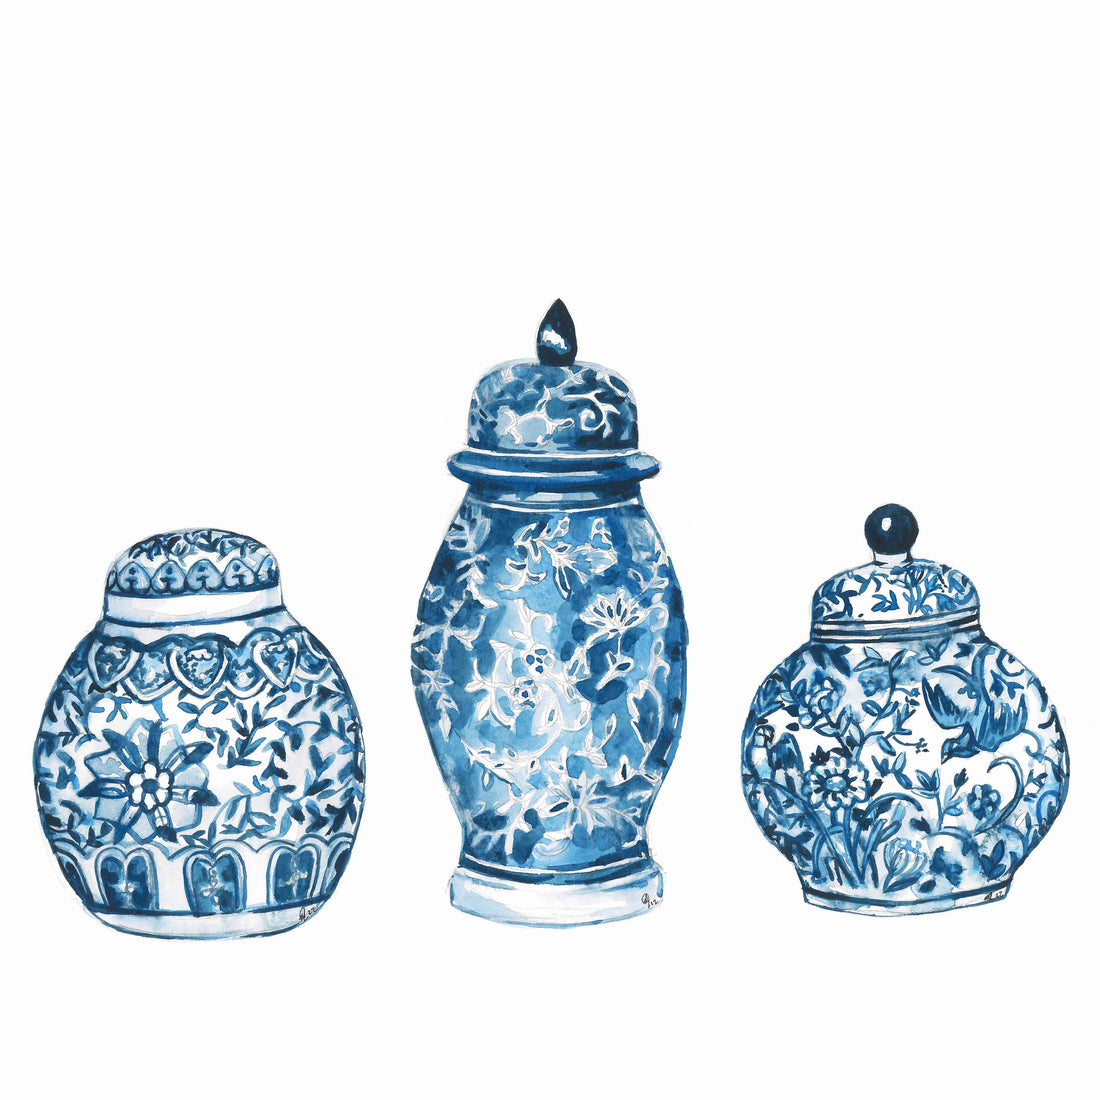 Delft jars